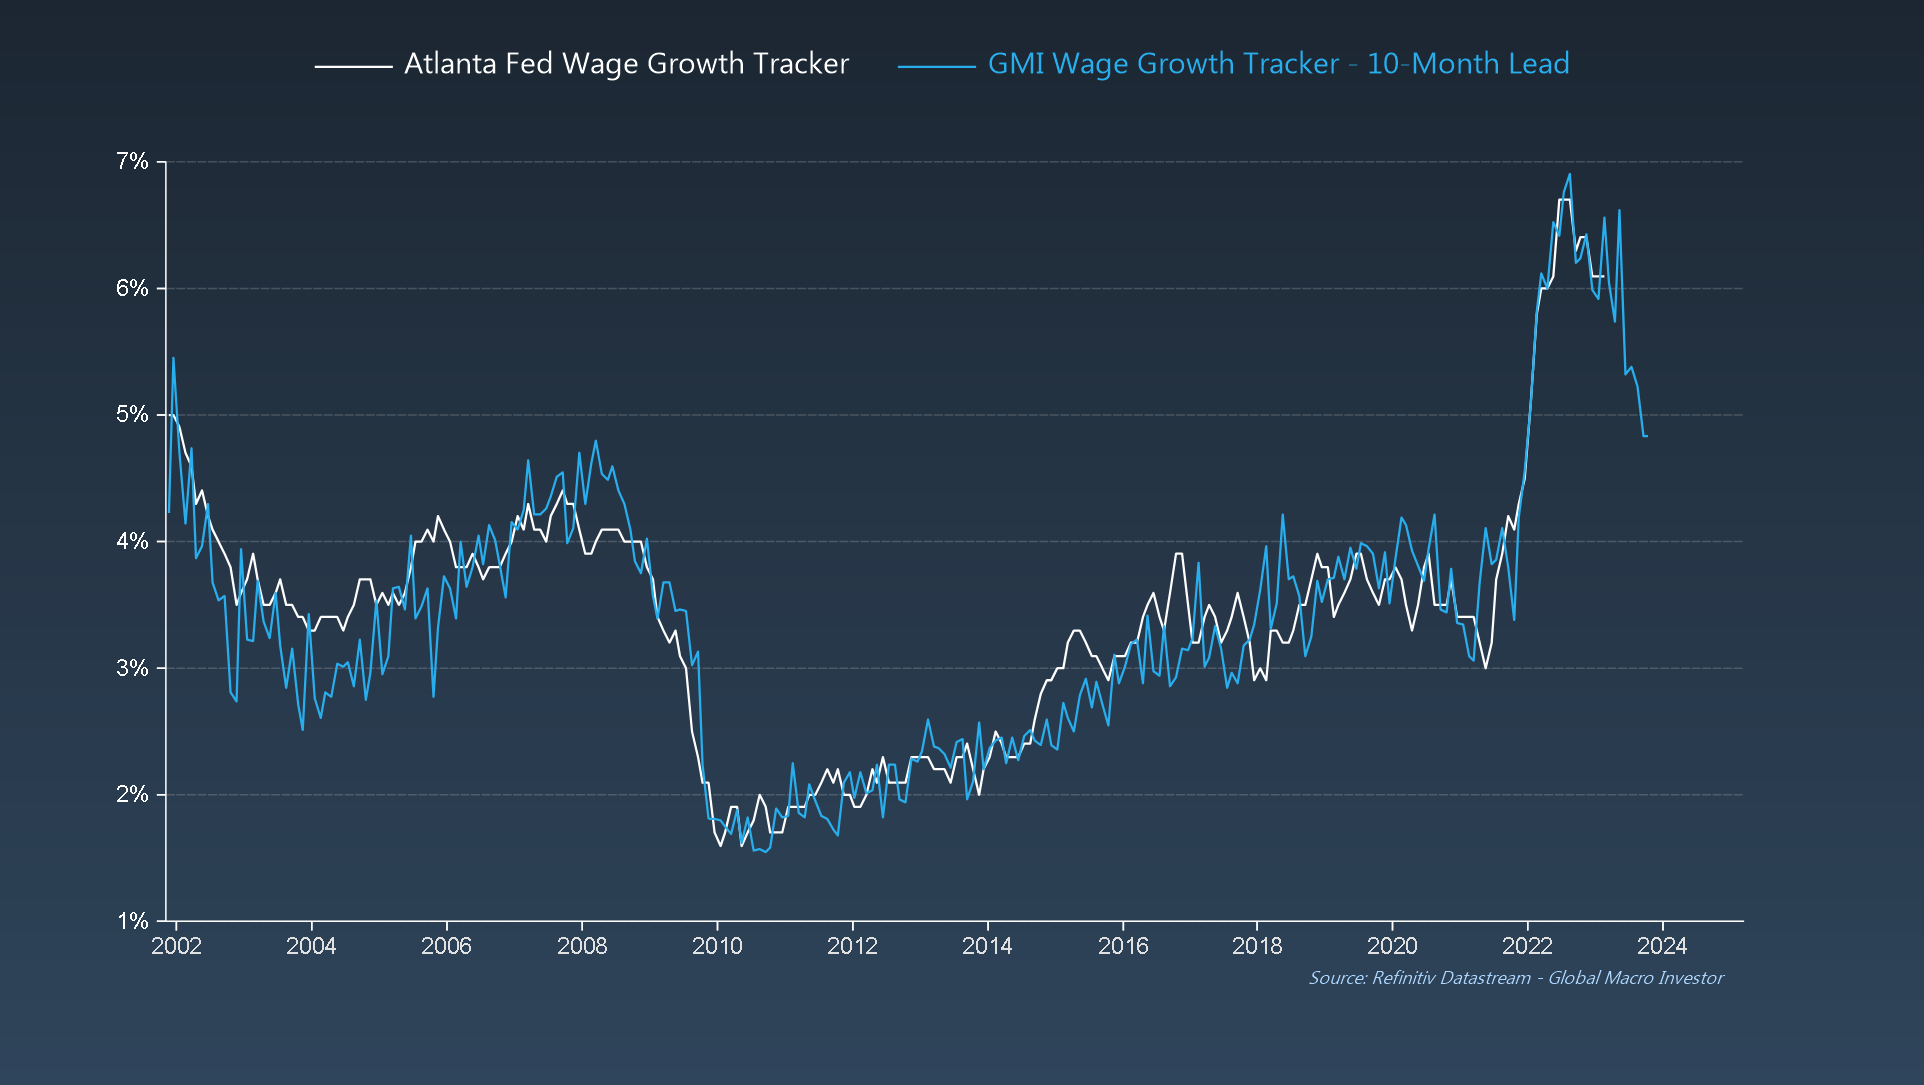 Atlanta Vs. GMI Wage Growth Trackers